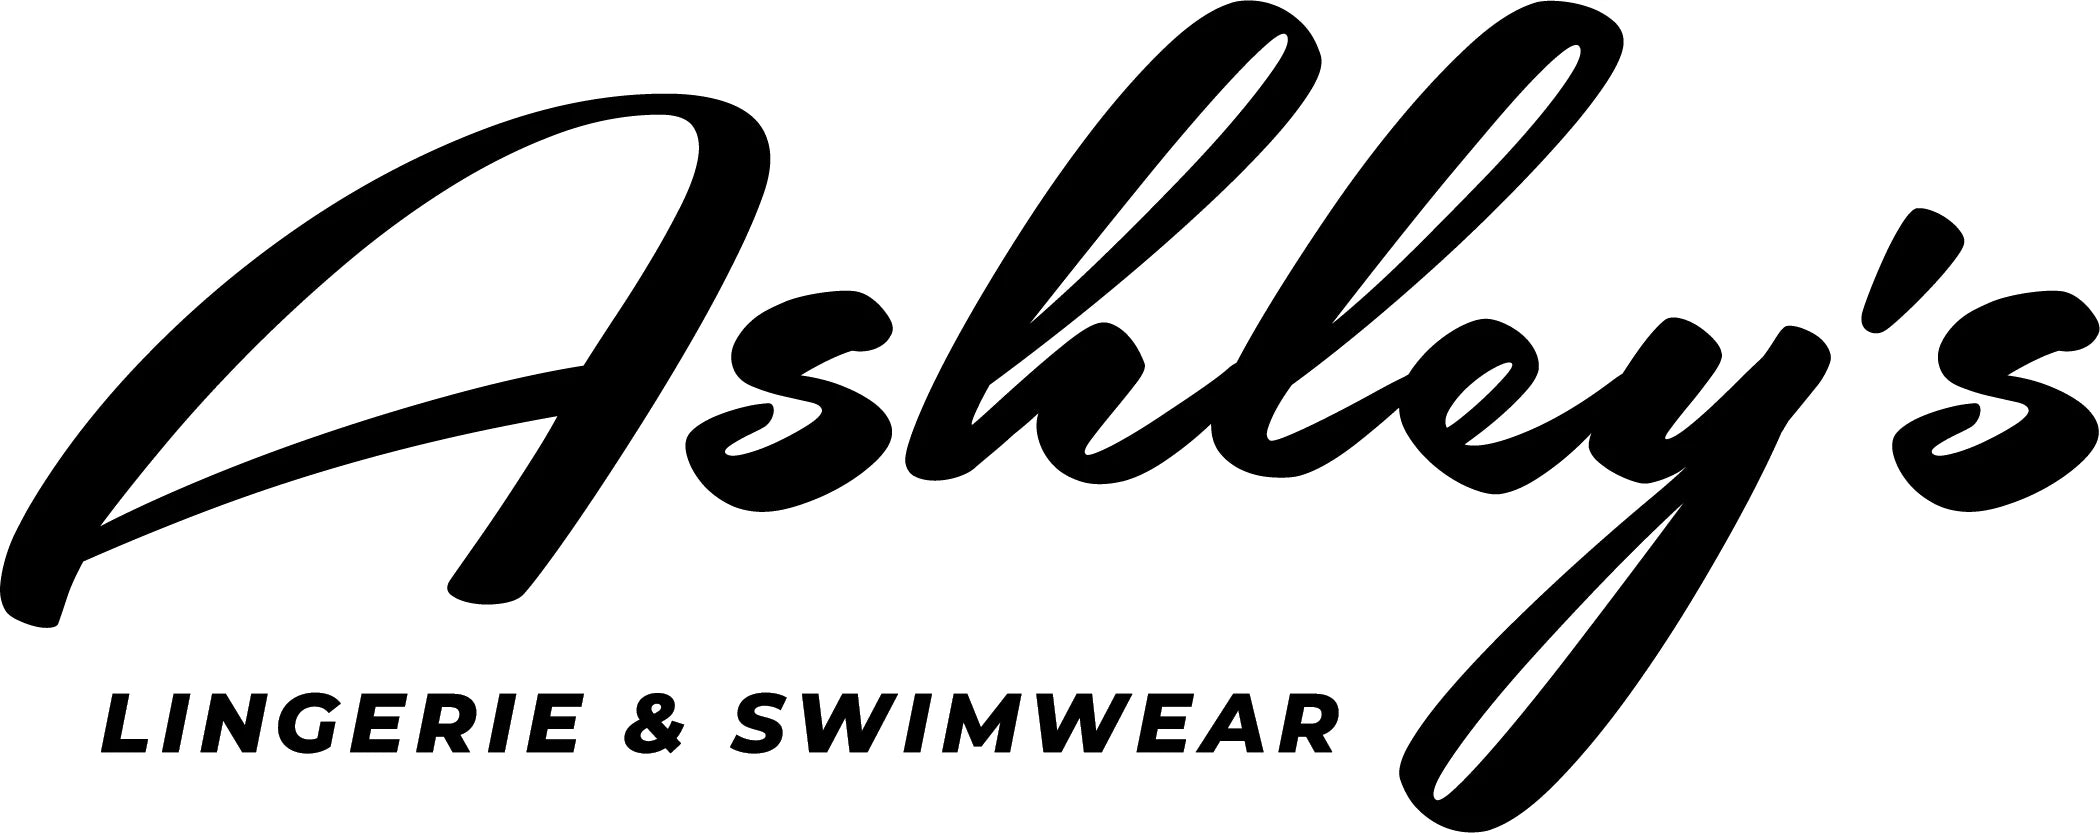 Best Sellers – Ashley's Lingerie & Swimwear